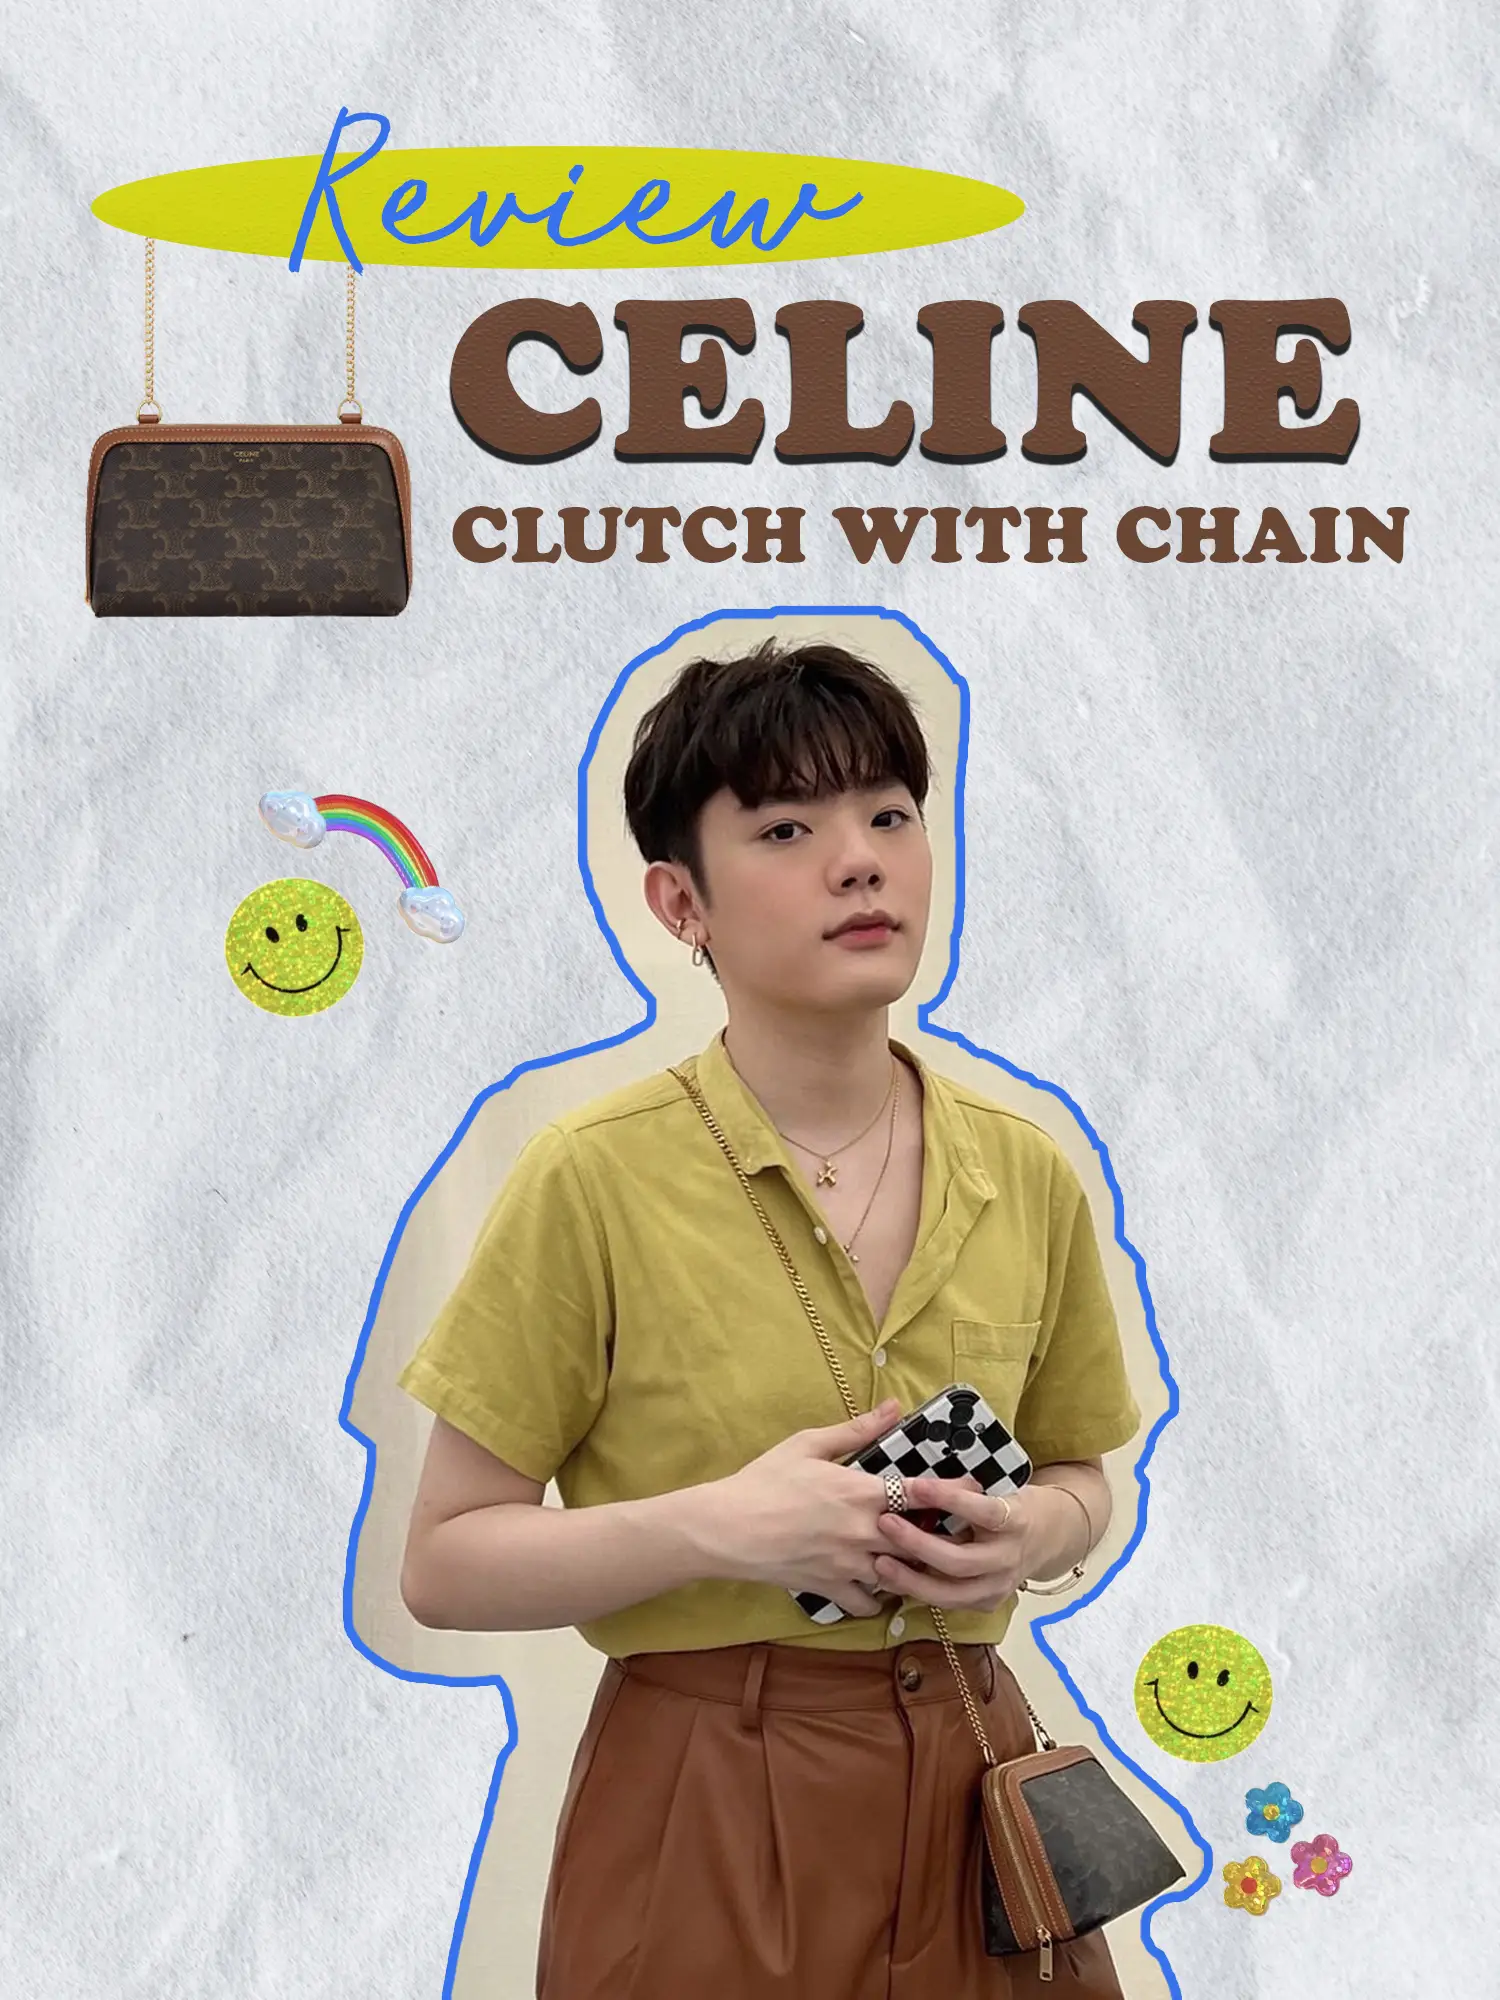 รีวิว CELINE Clutch with chain อีกหนึ่งรุ่นยอดฮิต! 👝